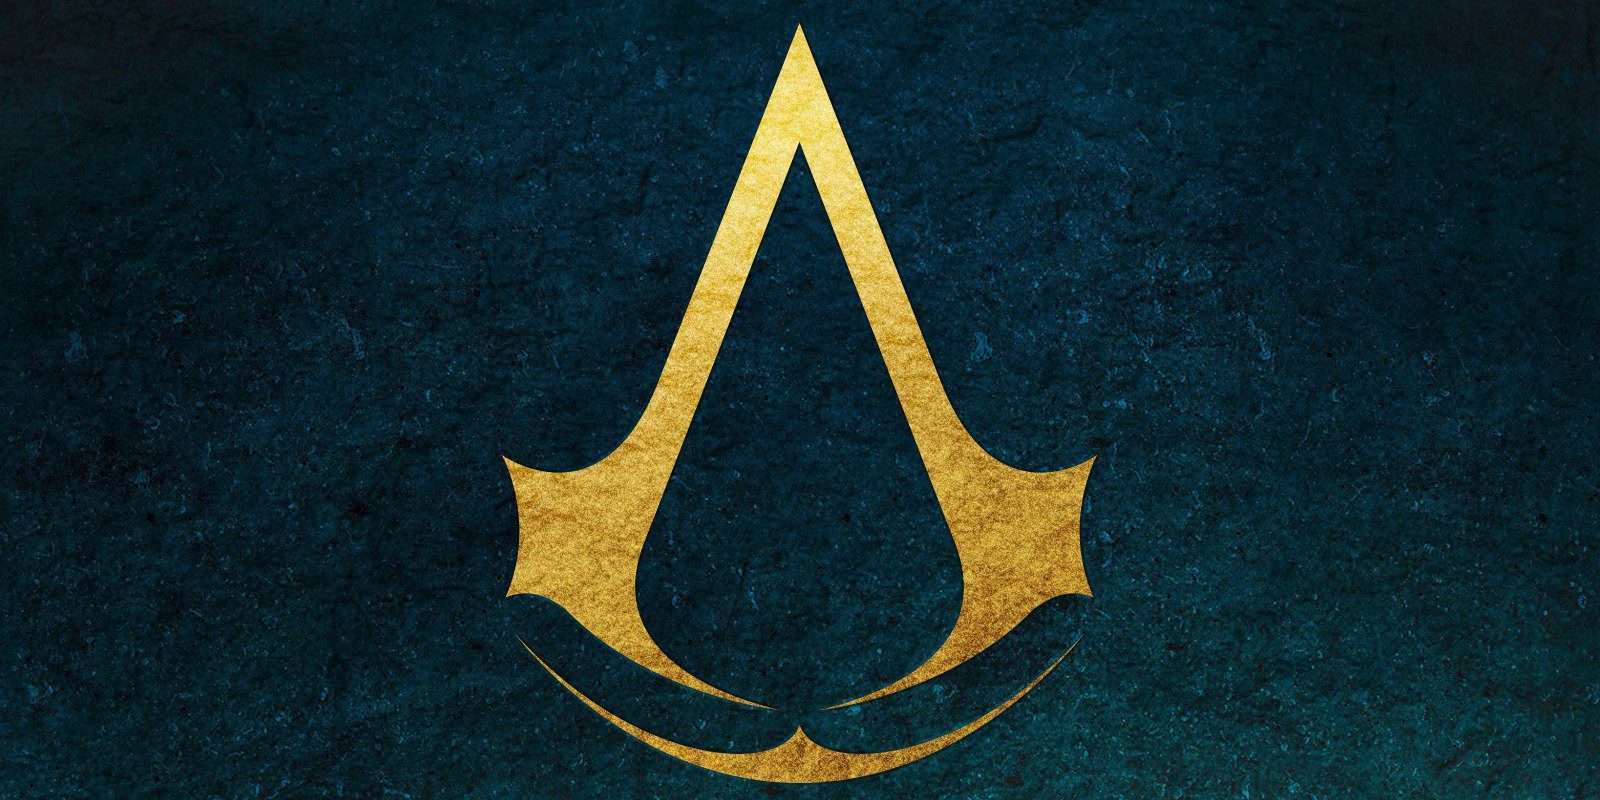 Ubisoft confirma 'Far Cry 5', 'The Crew 2' y nuevo 'Assassin's Creed' para este año